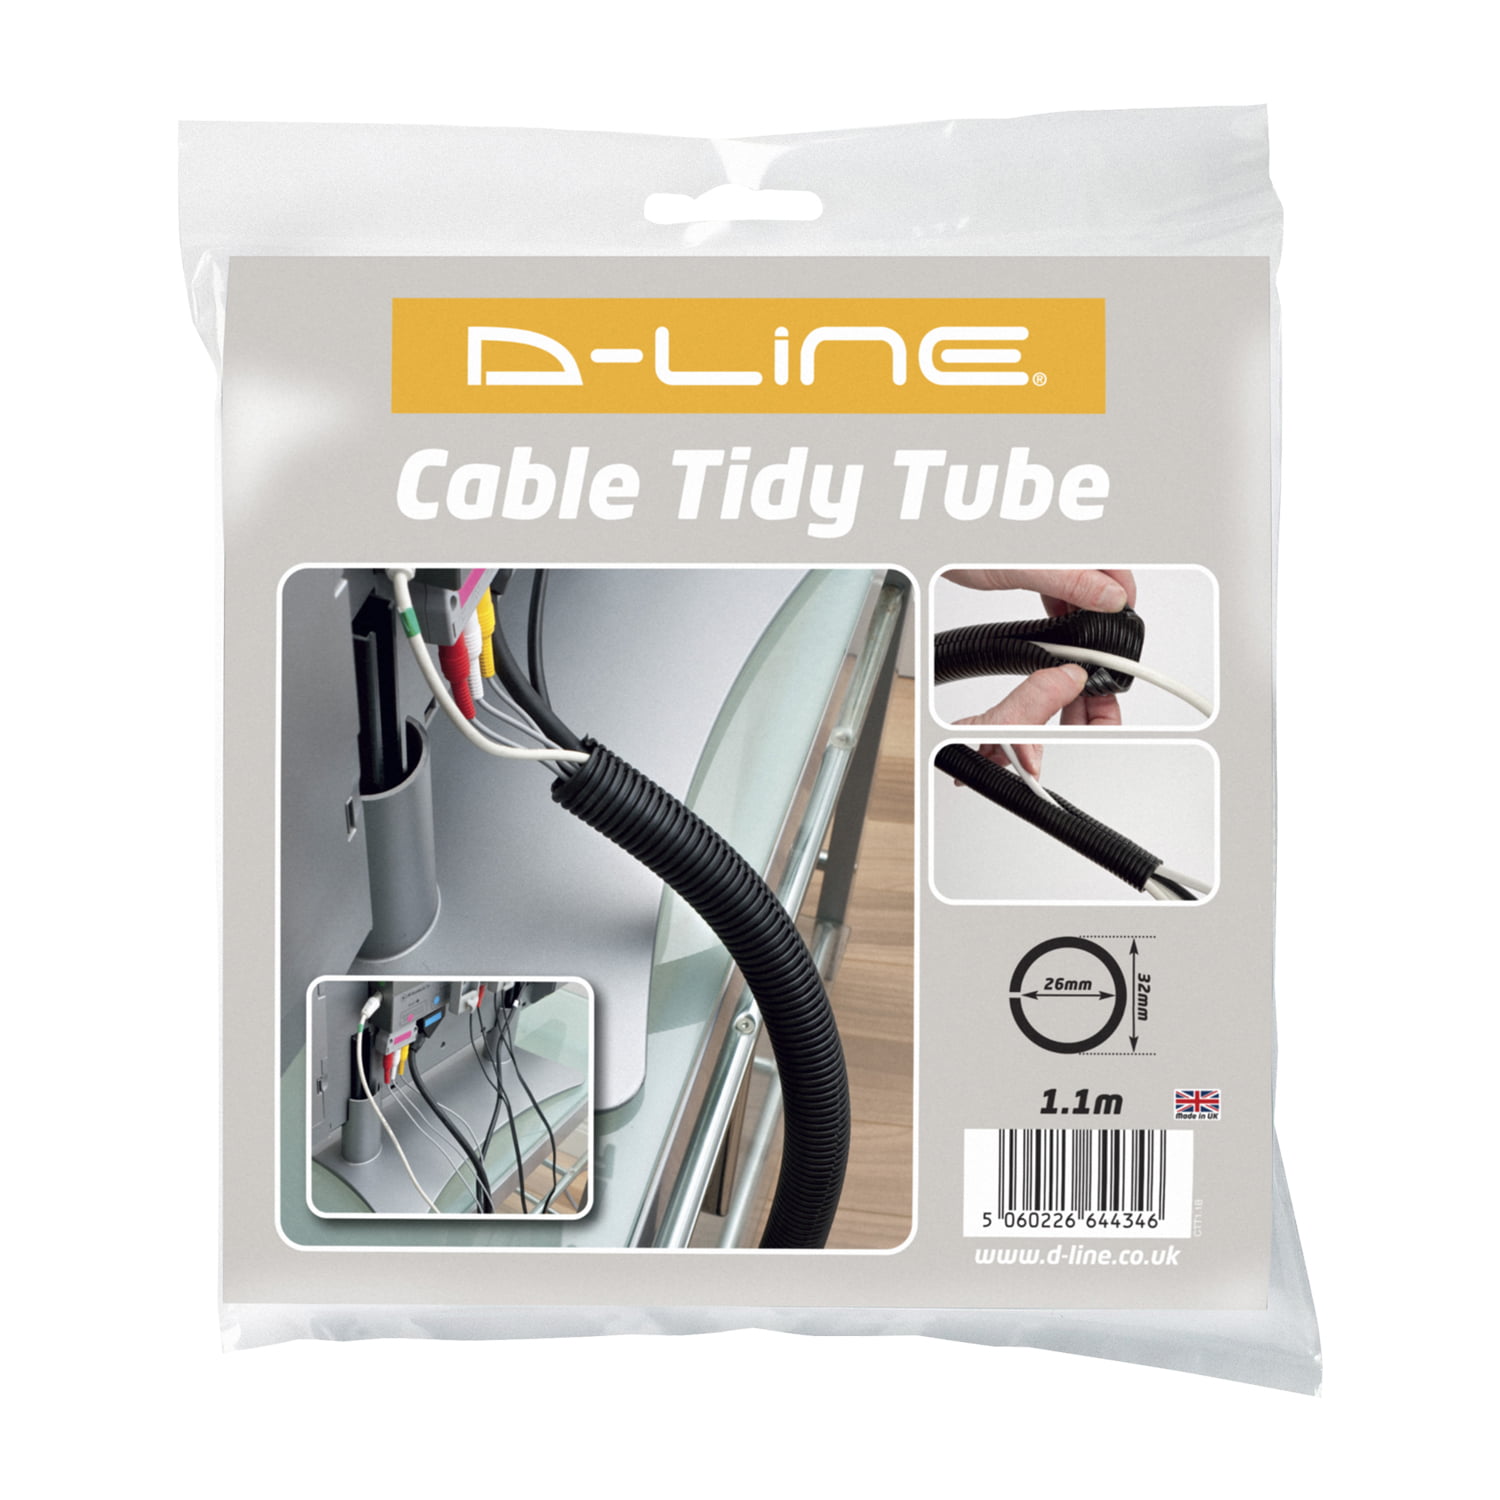 D-Line Cable Management Box, Hide Power Strips & Cords - Large, Black